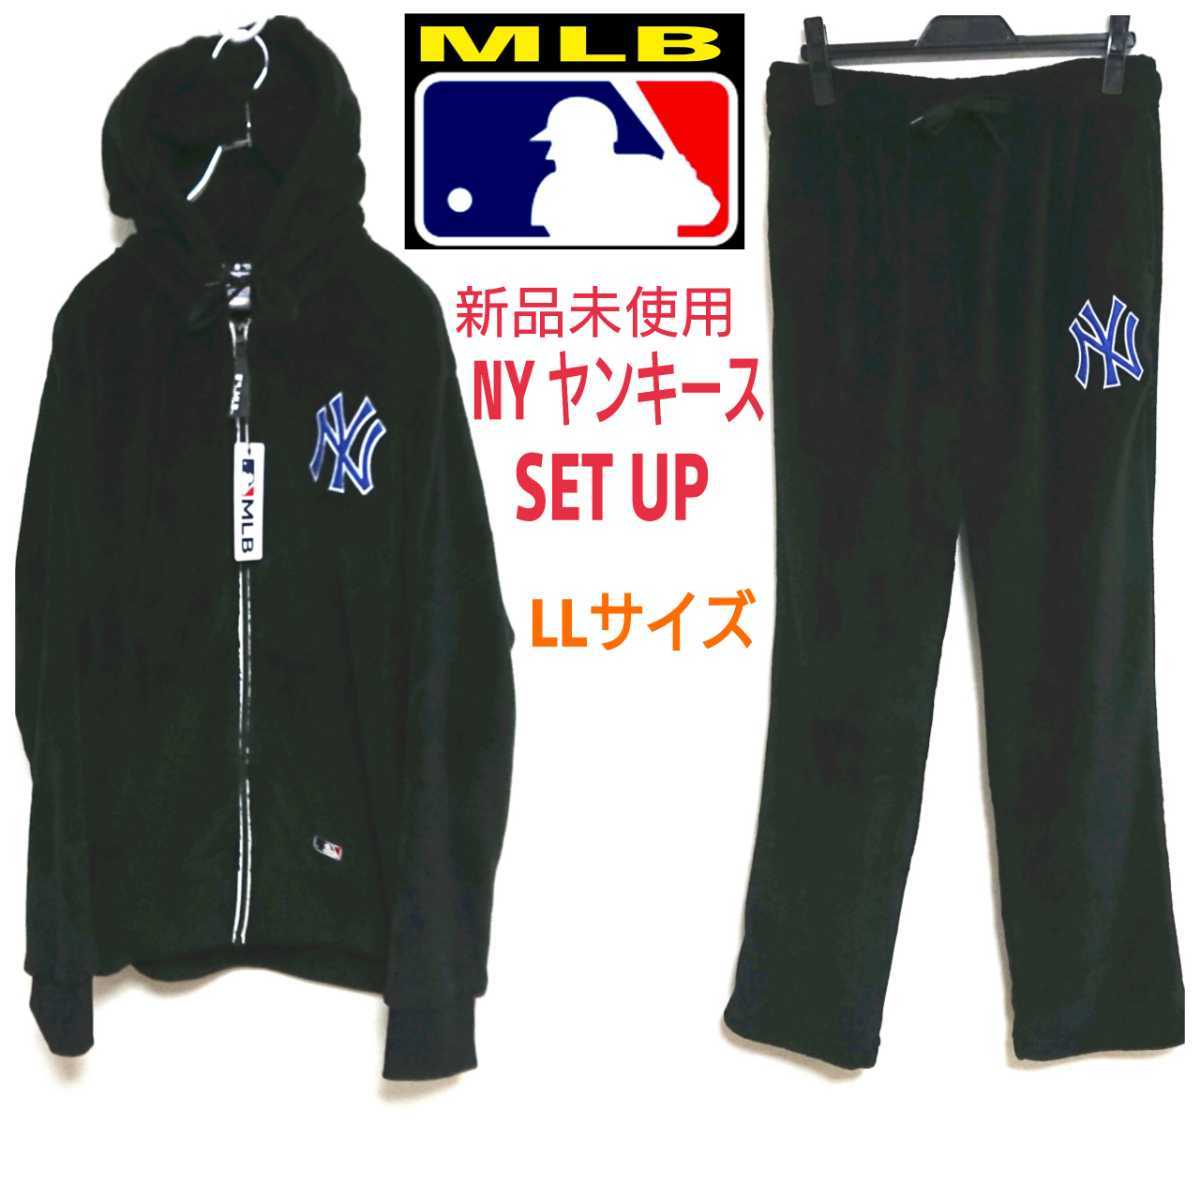 新品未使用 MLB Yankees ニューヨークヤンキース set up セットアップ 黒色 パーカー & パンツ フーディー pants